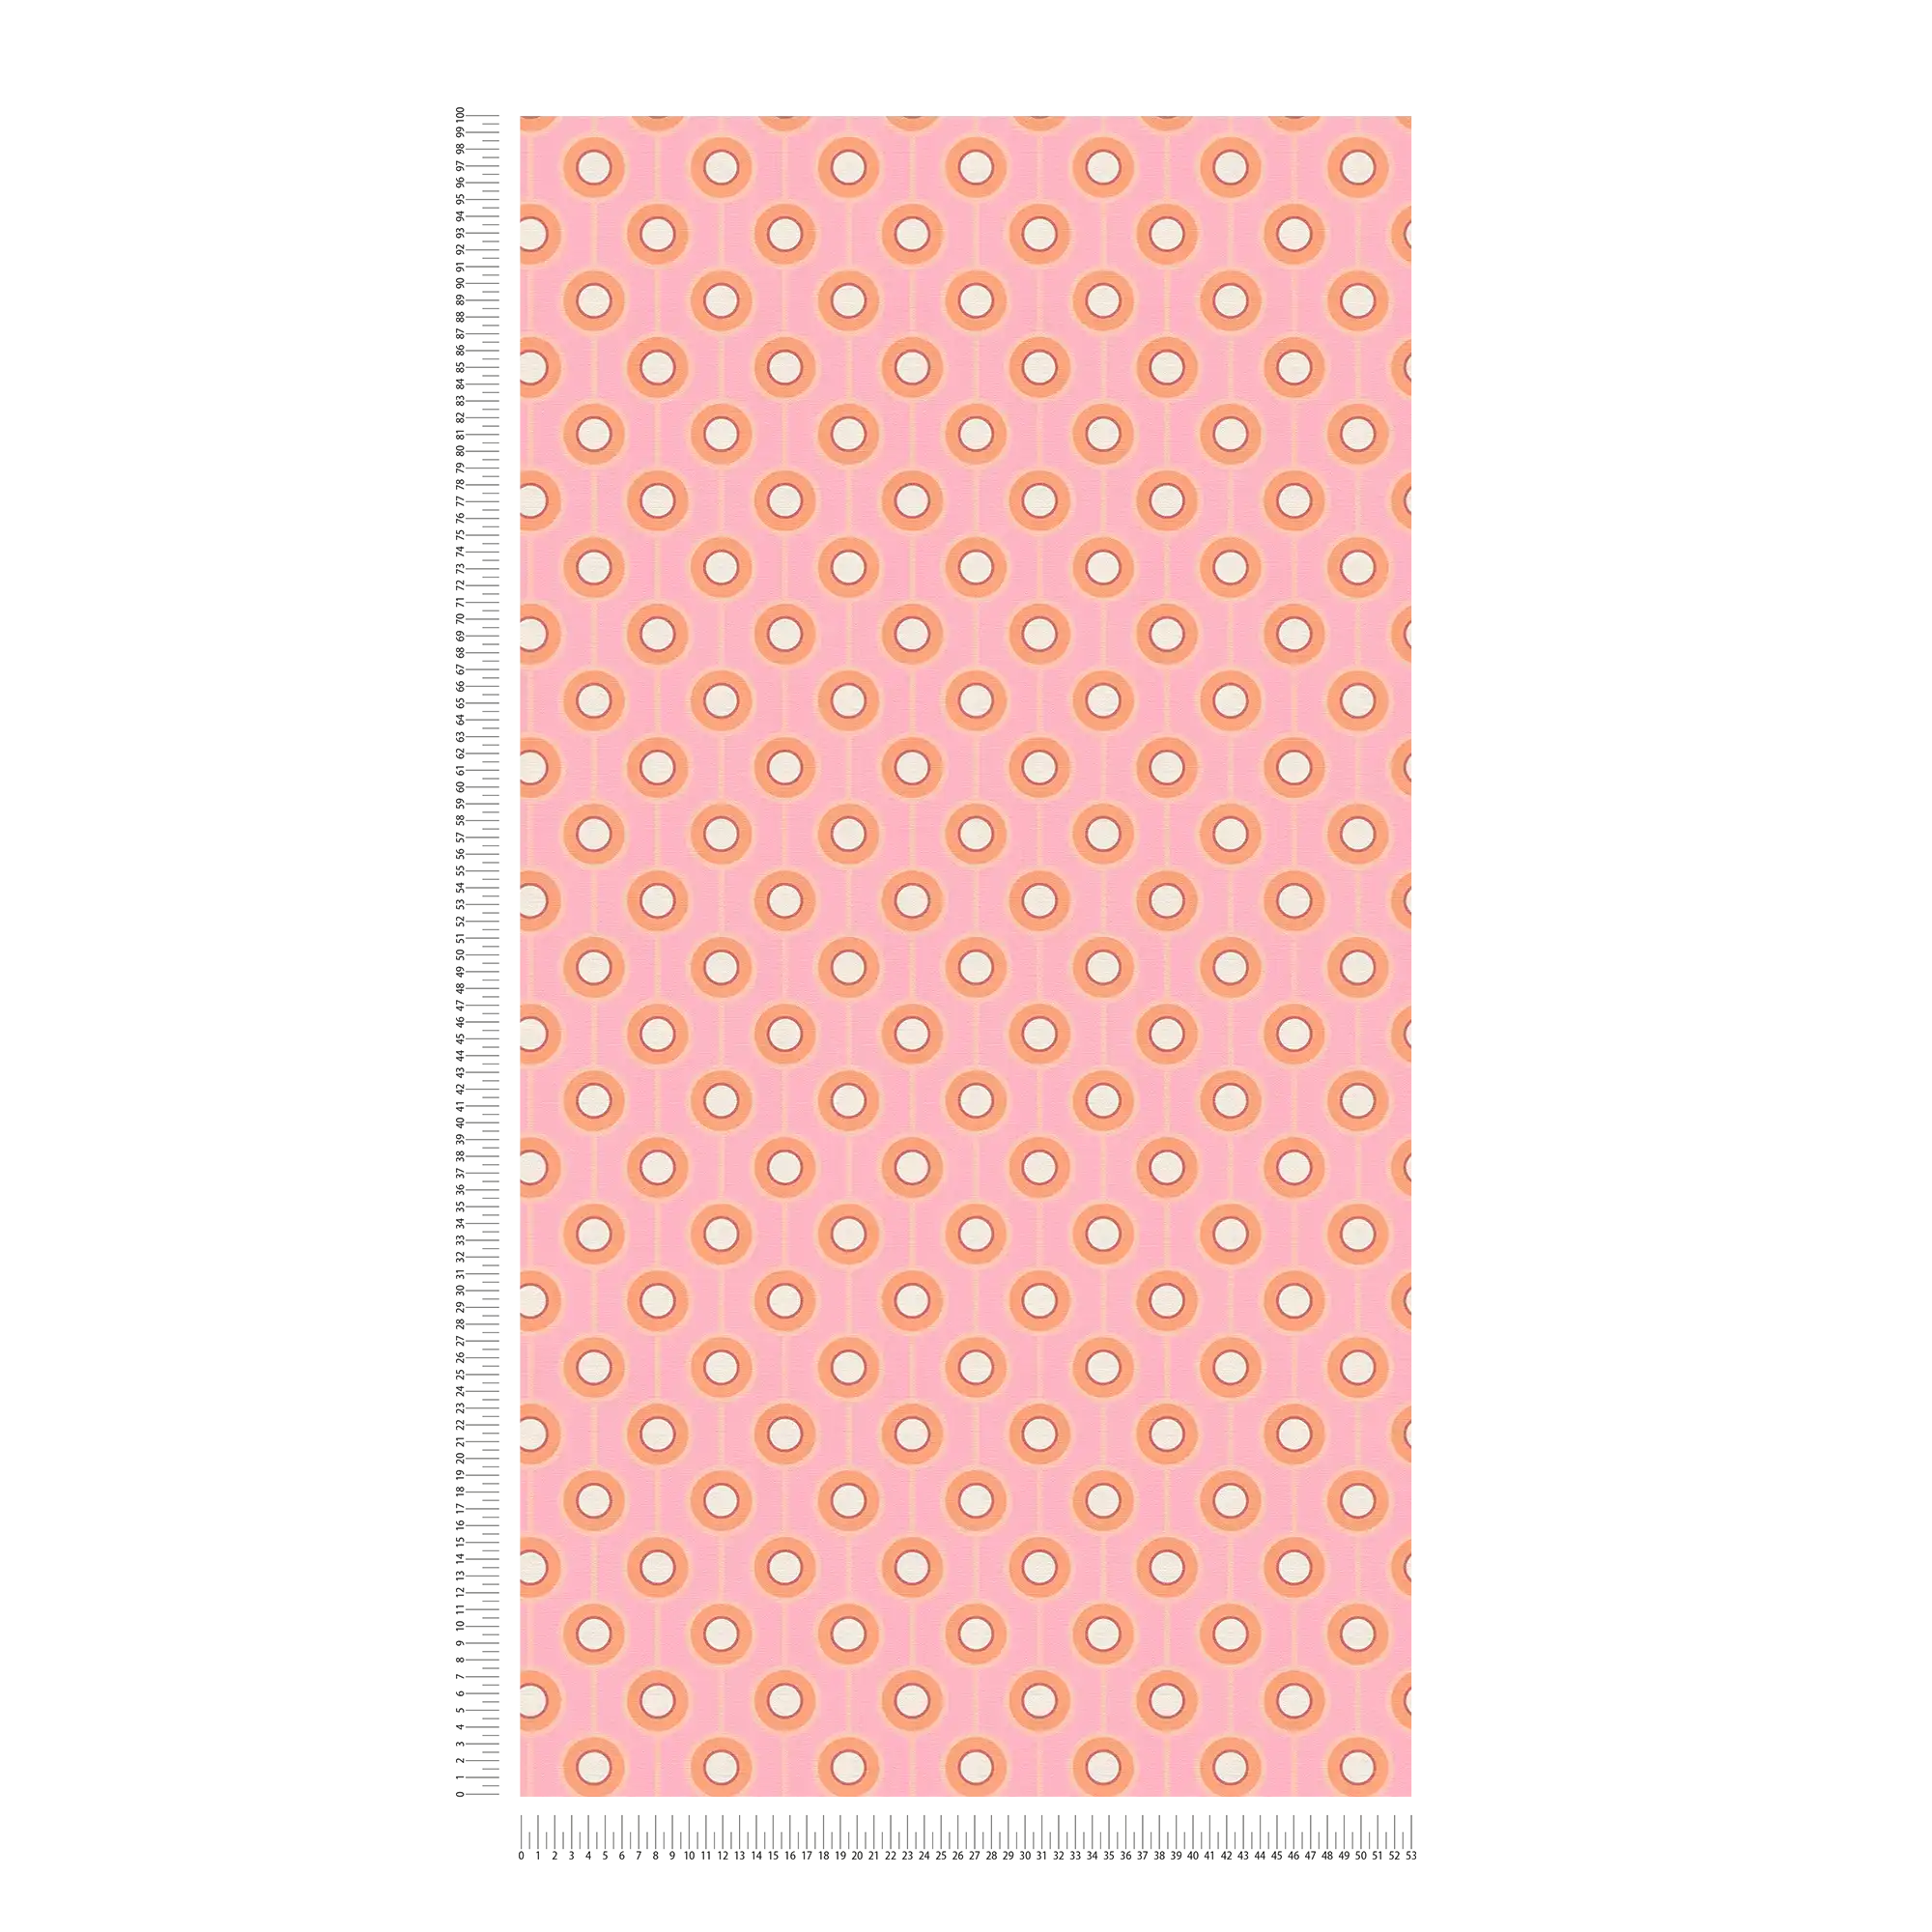             Leicht strukturierte Tapete mit Kreis Bemusterung – Pink, Orange, Beige
        